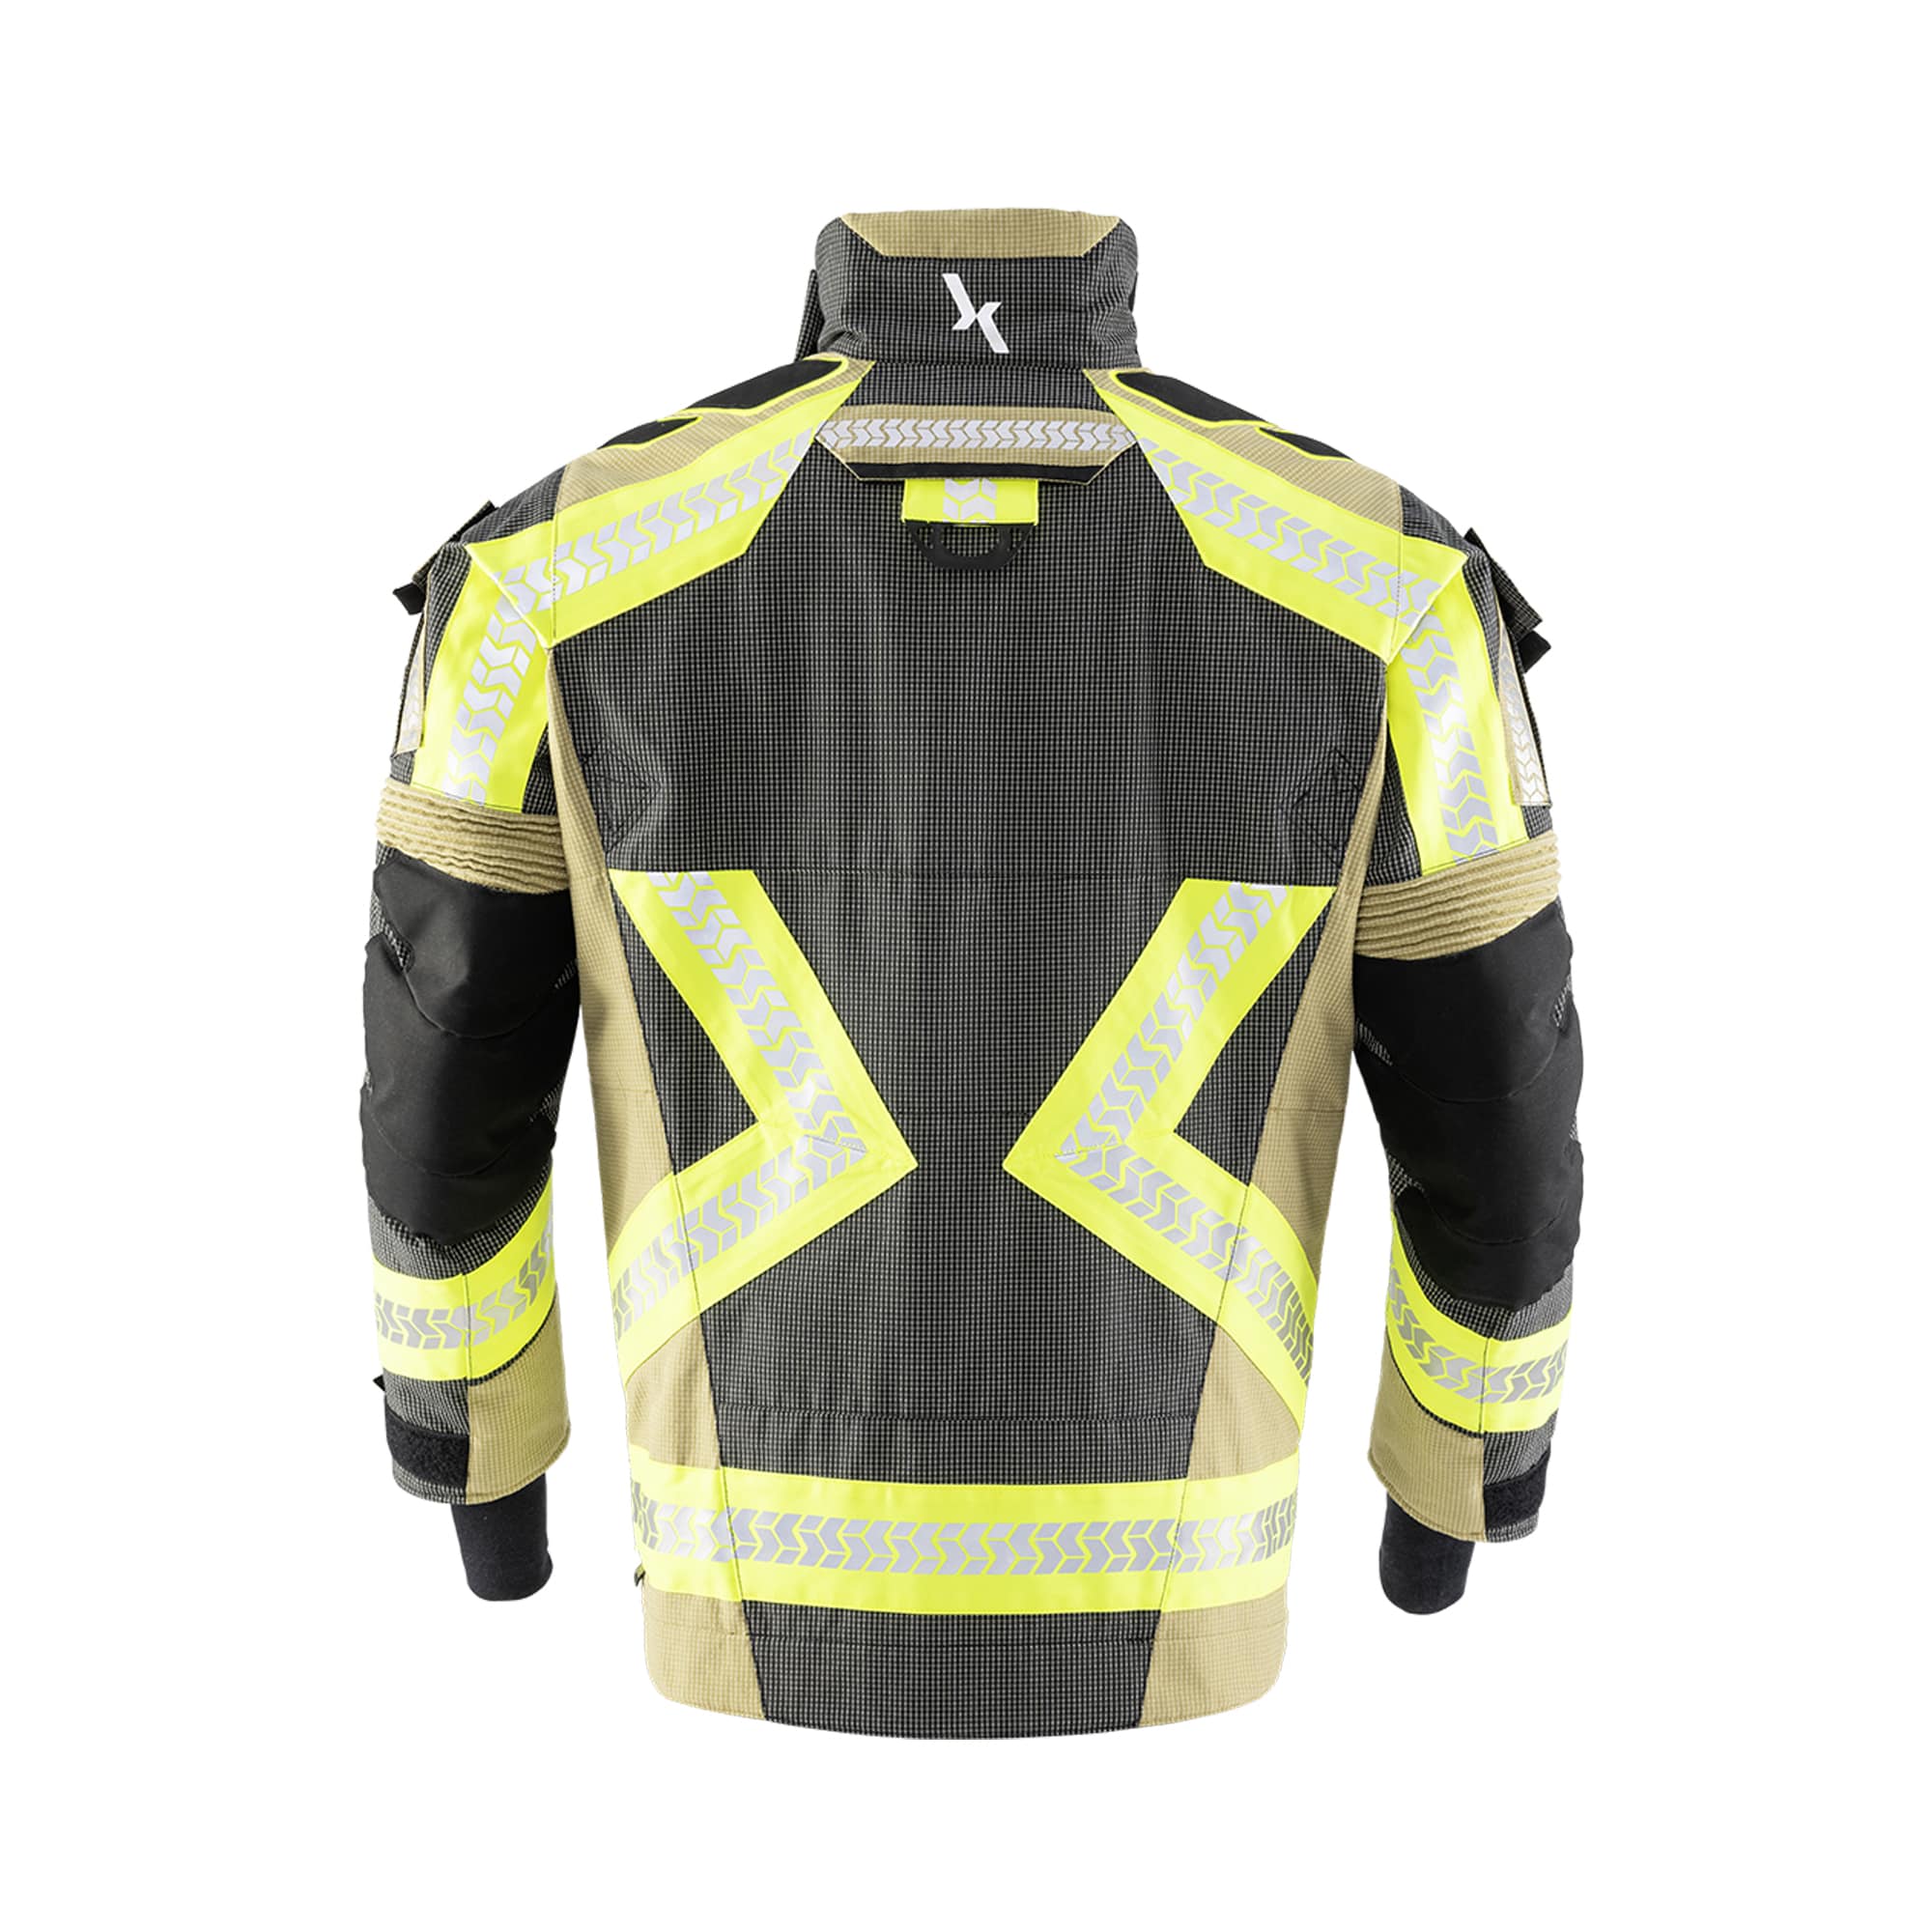 Interventno vatrogasno odijelo Texport Fire Stretch